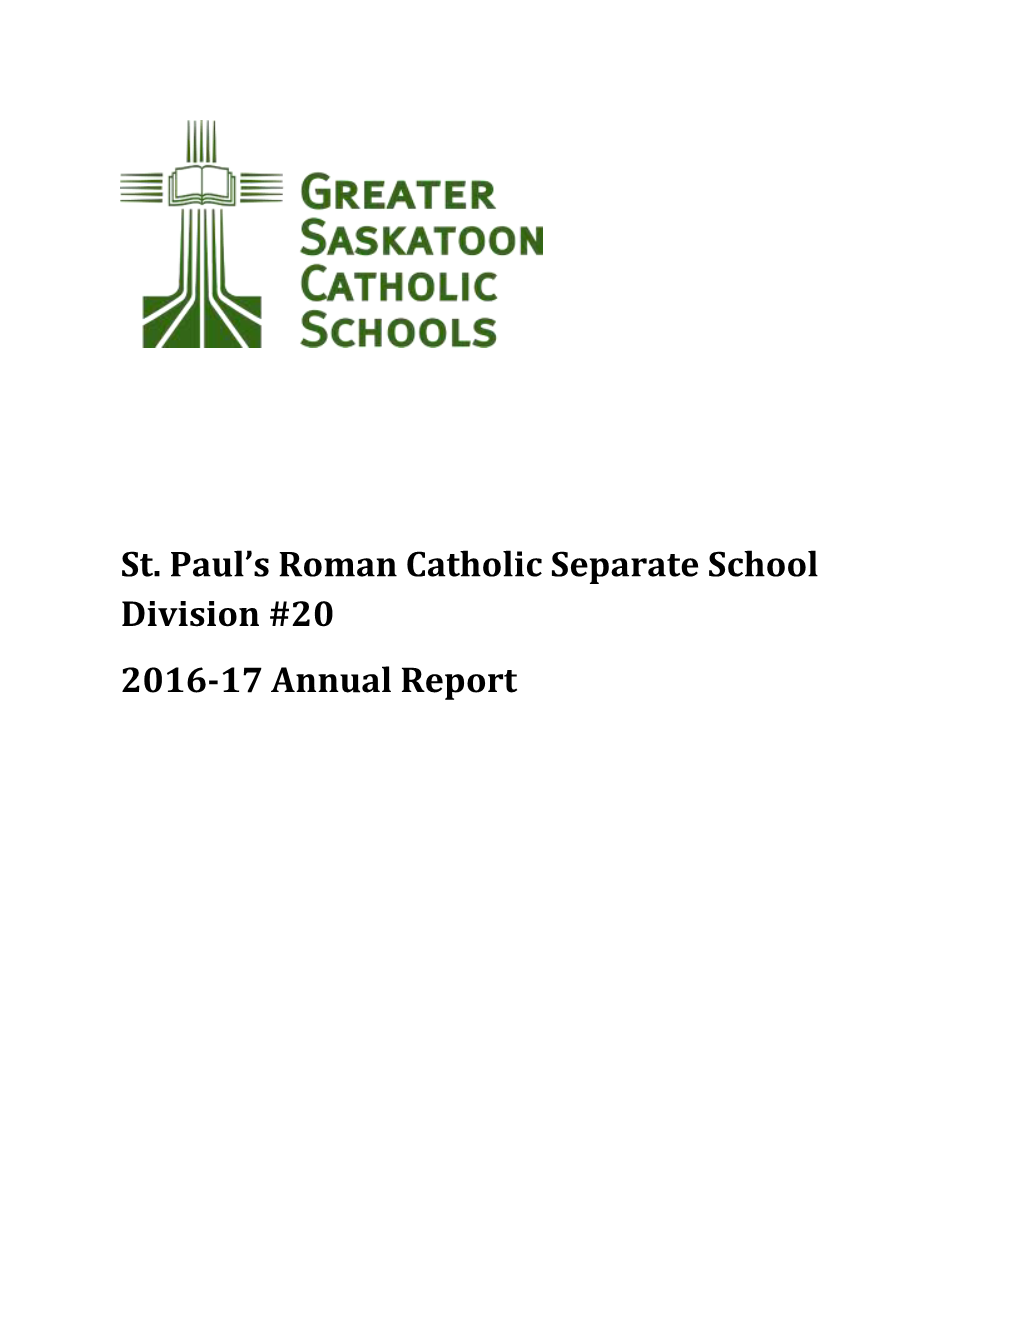 St. Paul's Roman Catholic Separate School Division #20 2016-17 Annual Report